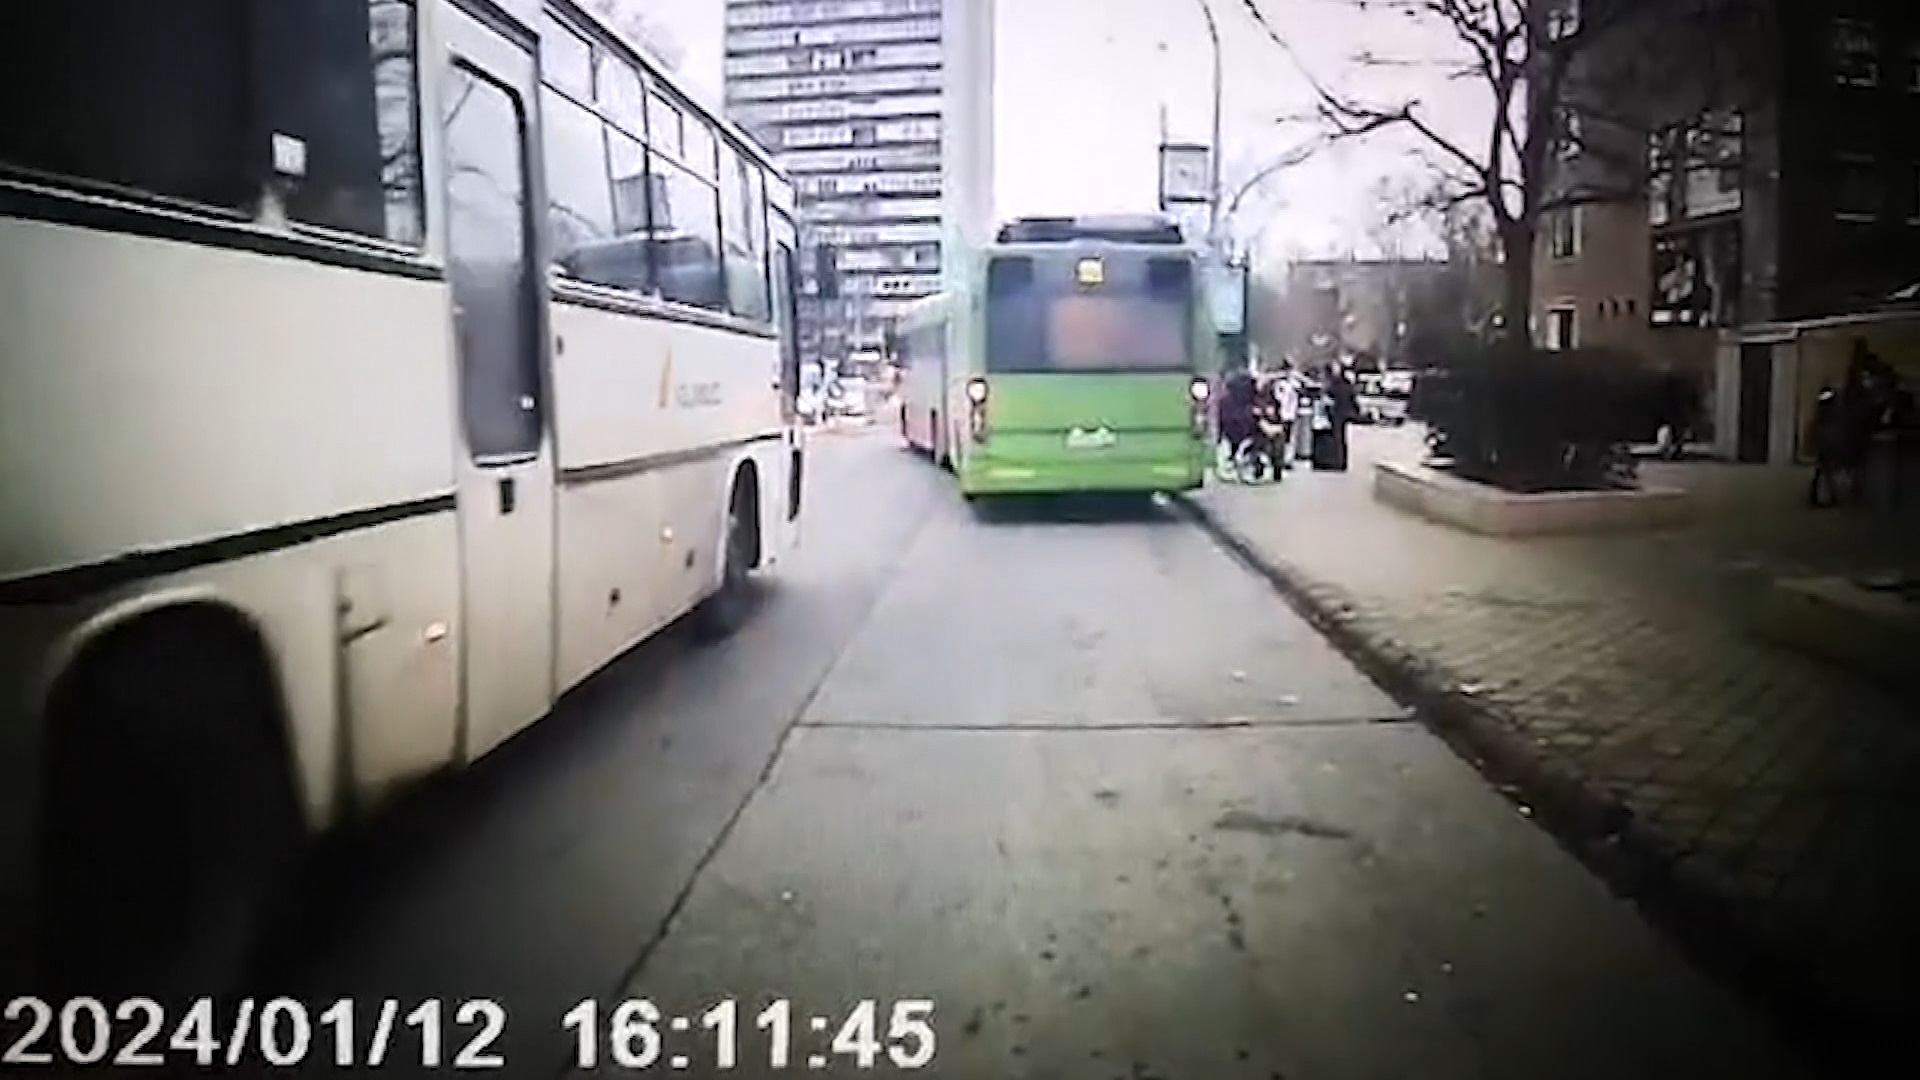 A megállóban hagyta a buszsofőr a mozgáskorlátozott nyugdíjast + videó